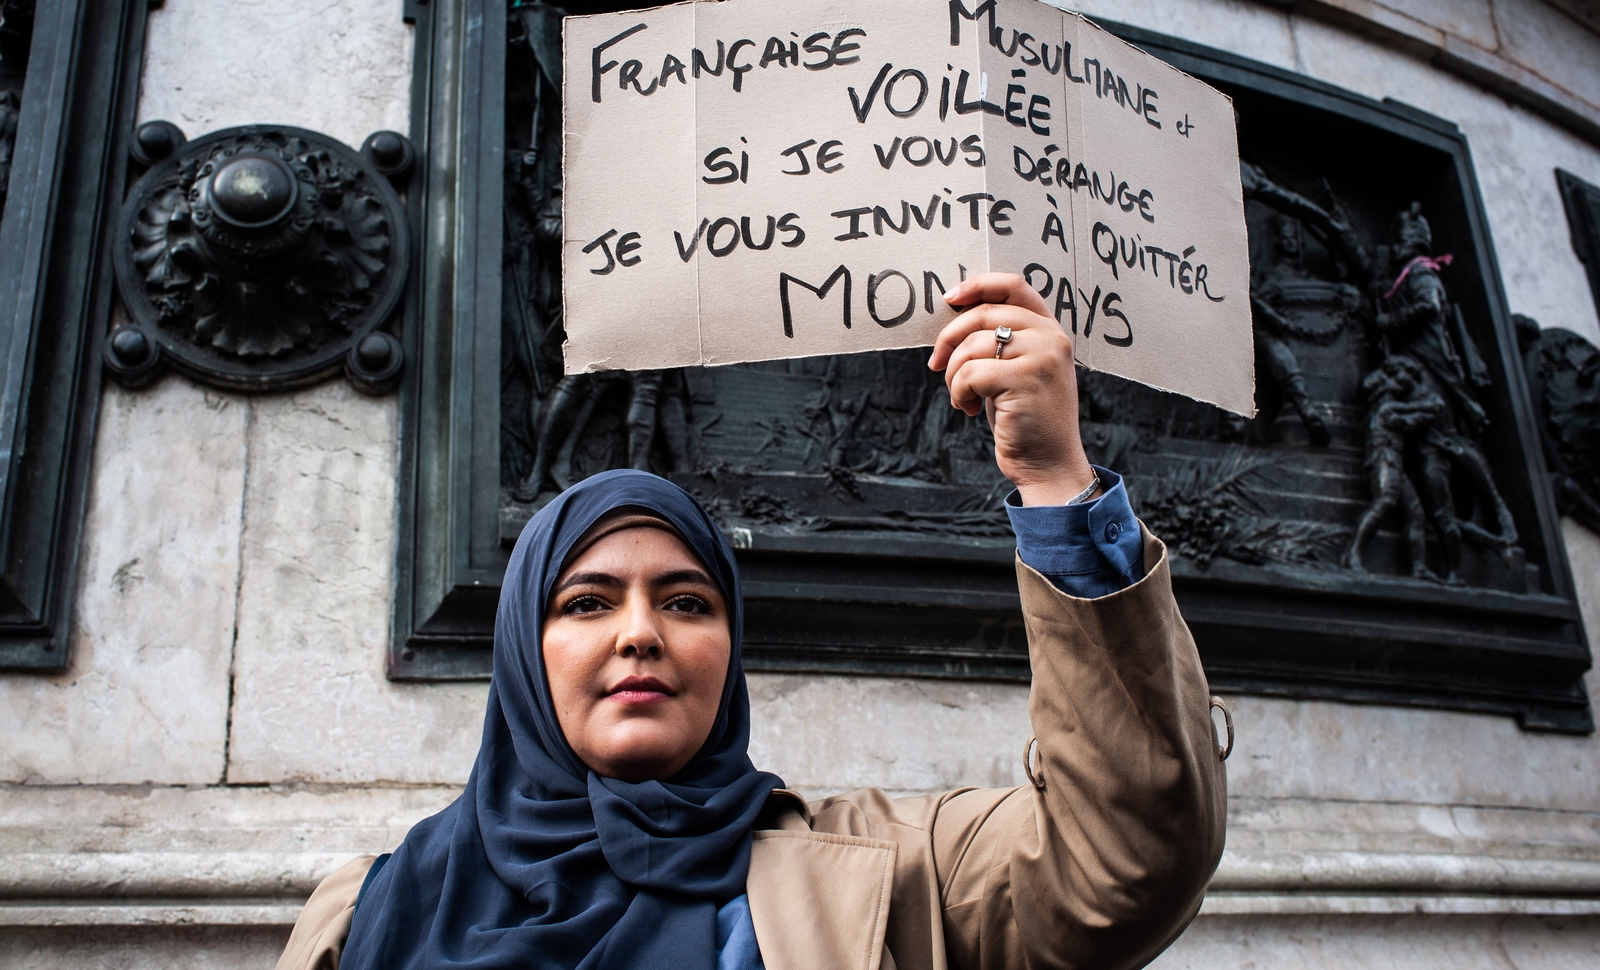 Rassemblement contre l'islamophobie, Paris, 19 octobre 2019. (c) Benjamin Mengelle / Hans Lucas / AFP